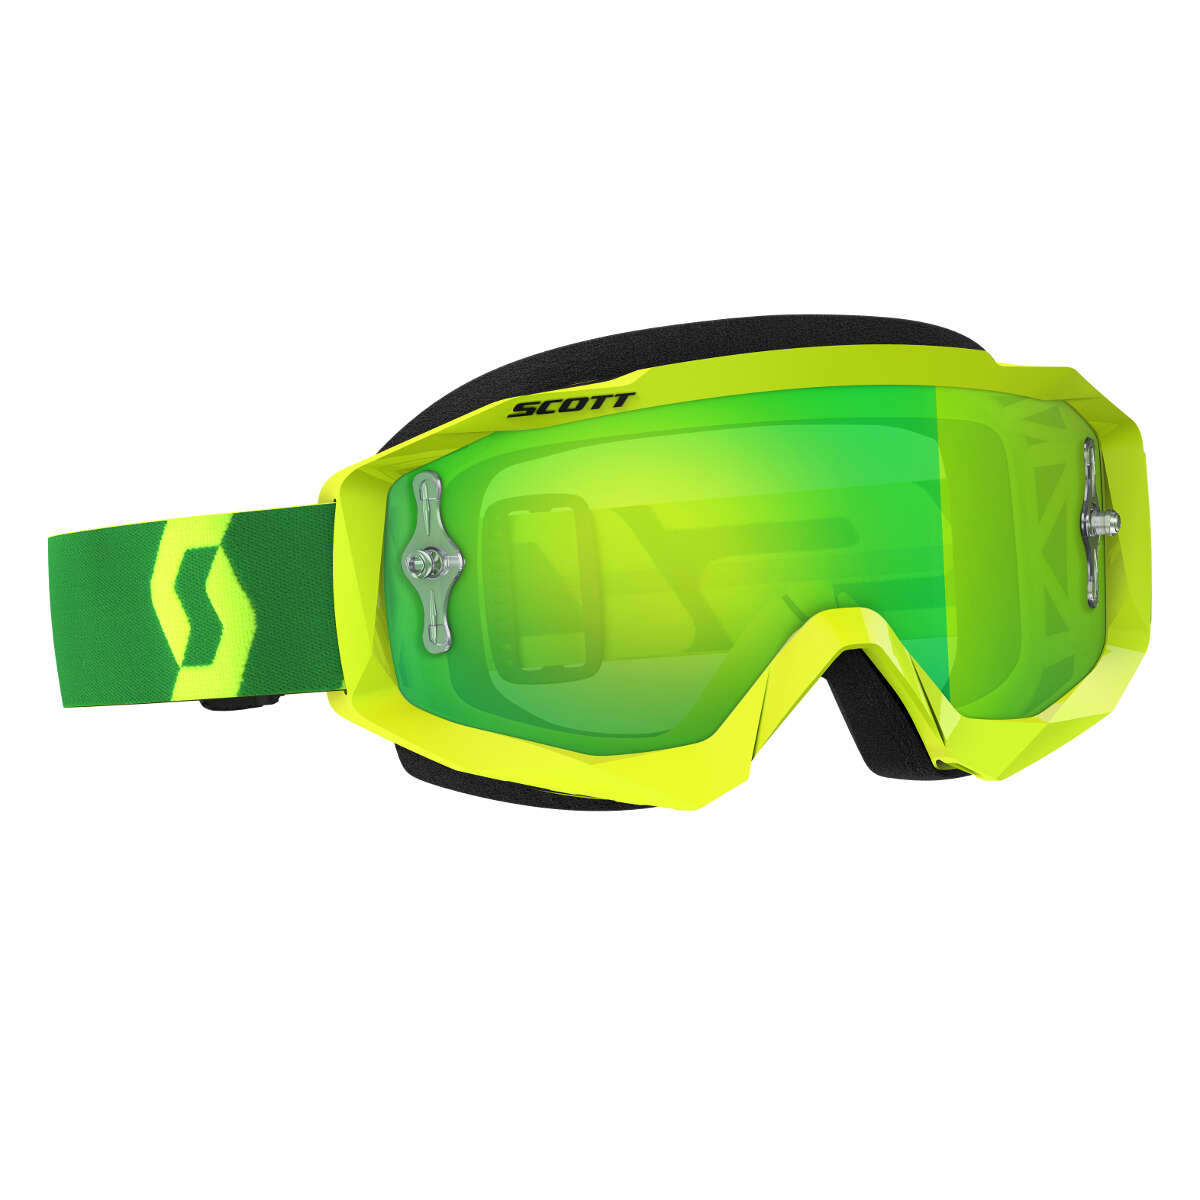 Scott Goggle Hustle MX Yellow/Green - Green Chrome Works Anti-Fog